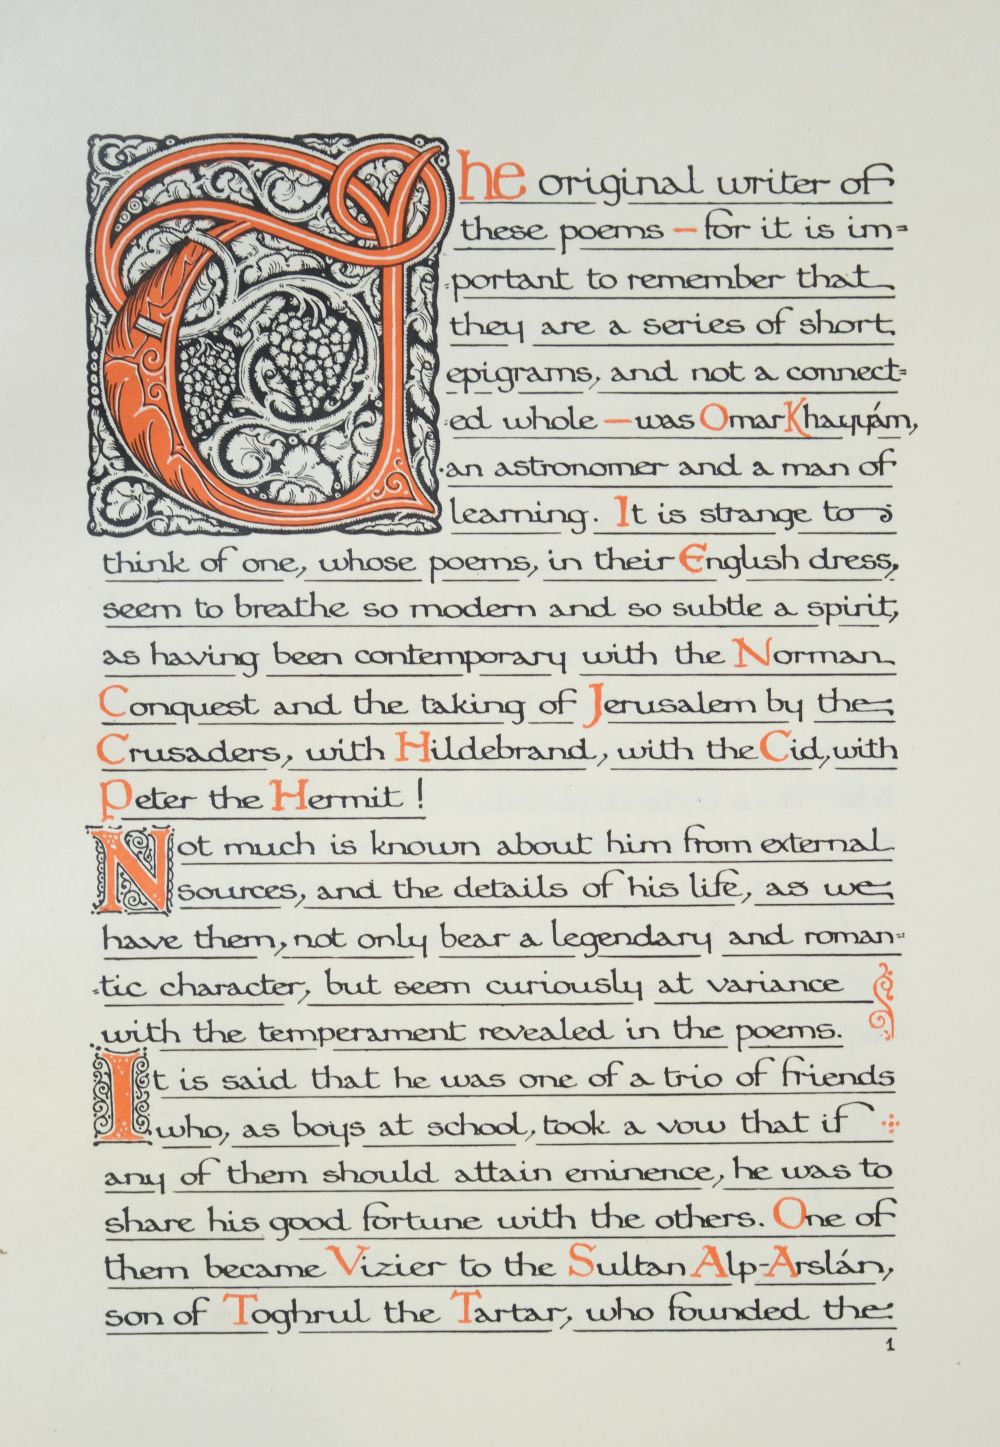 Sangorski & Sutcliffe Binding. Rubaiyat of Omar Khayyam, 1911 - Image 11 of 15